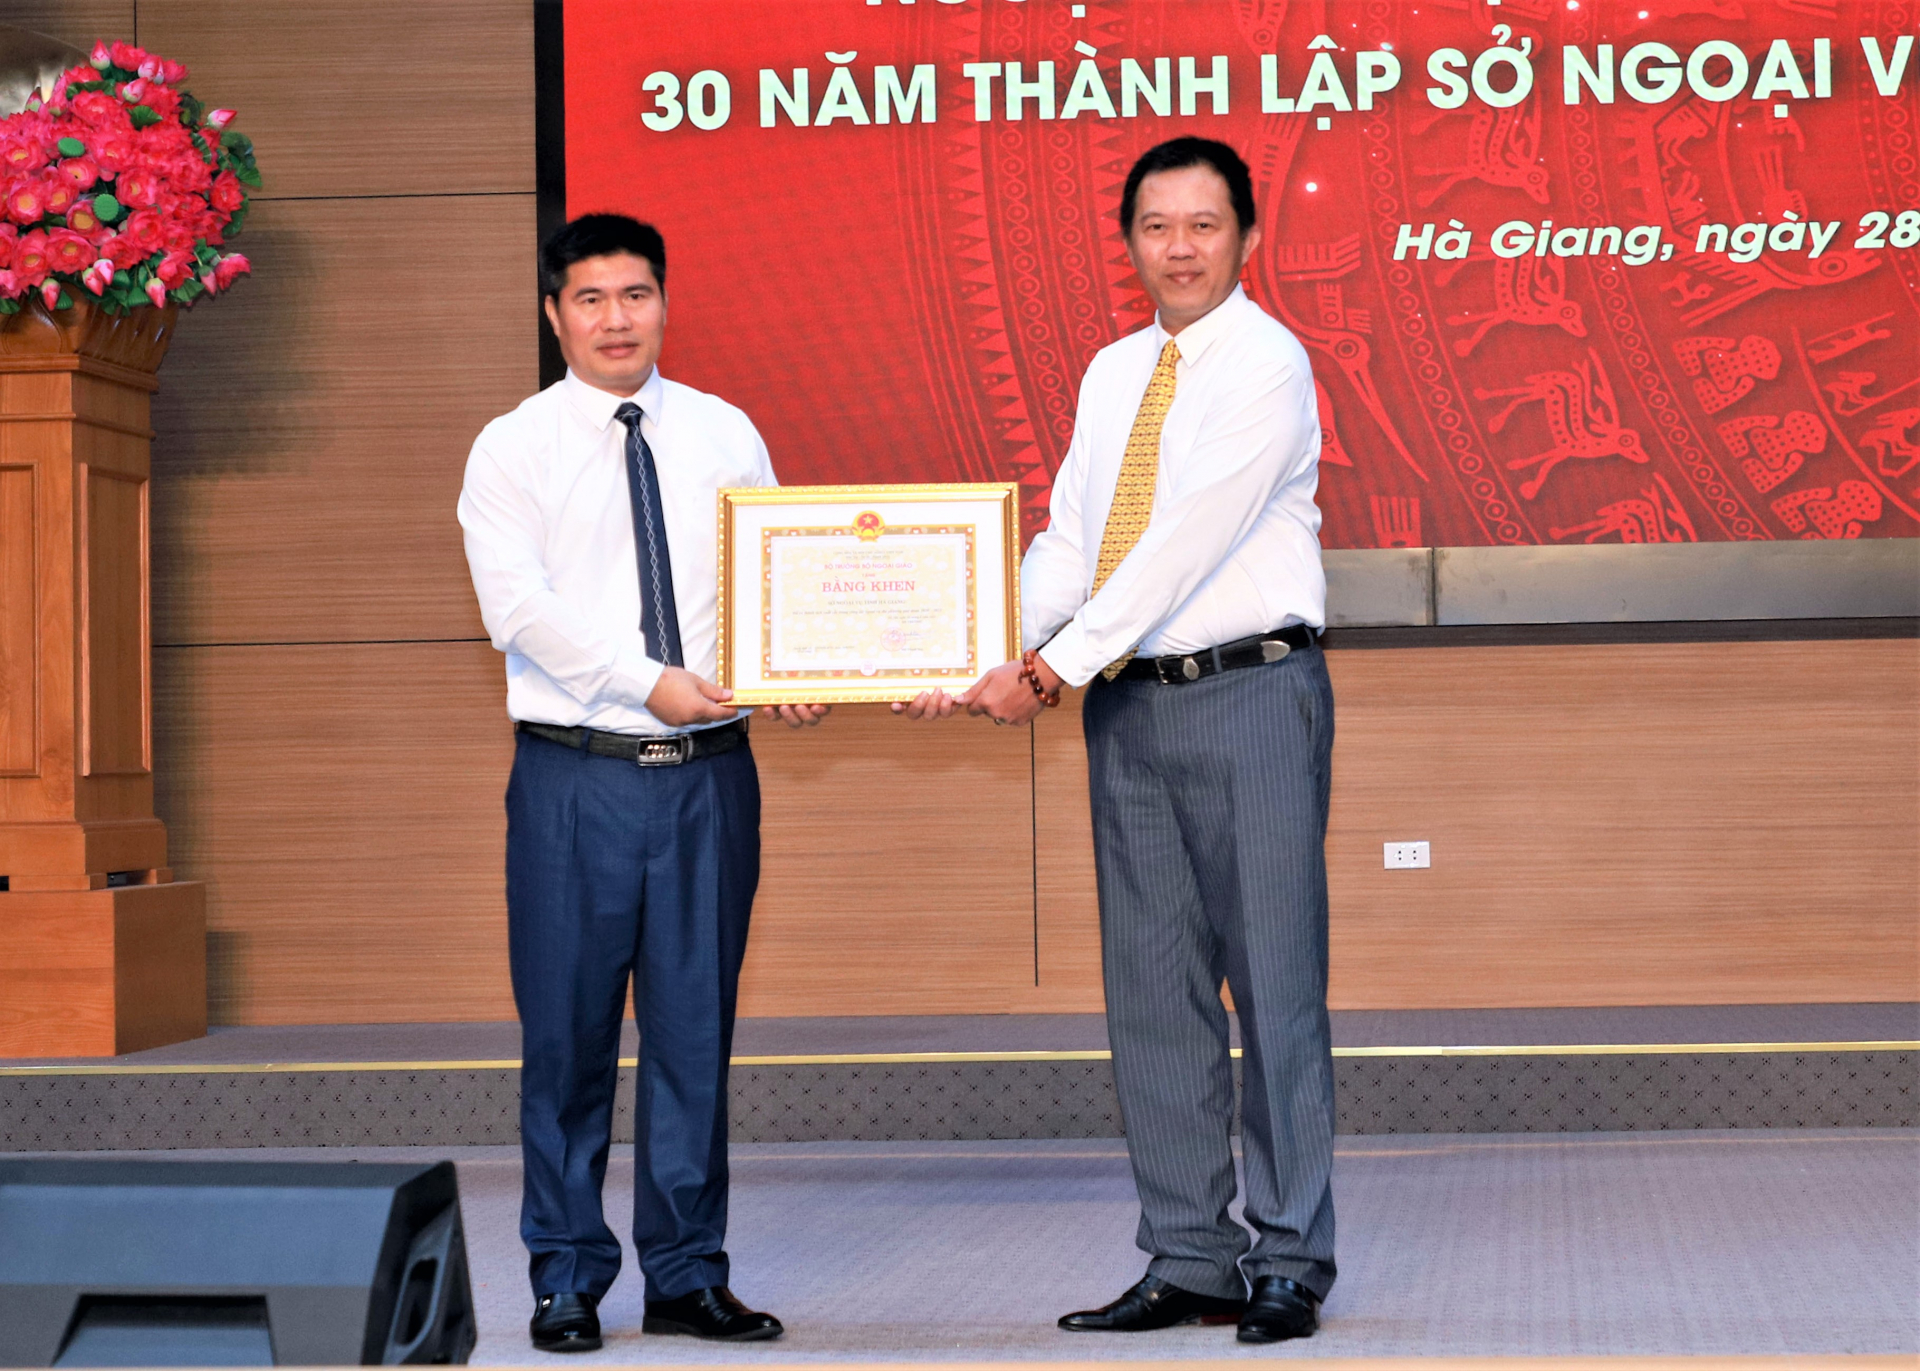 Giám đốc Sở Ngoại vụ Đỗ Quốc Hương đón nhận Bằng khen của Bộ trưởng Bộ Ngoại giao vì Sở đã có thành tích xuất sắc trong công tác ngoại vụ địa phương giai đoạn 2020 - 2022.